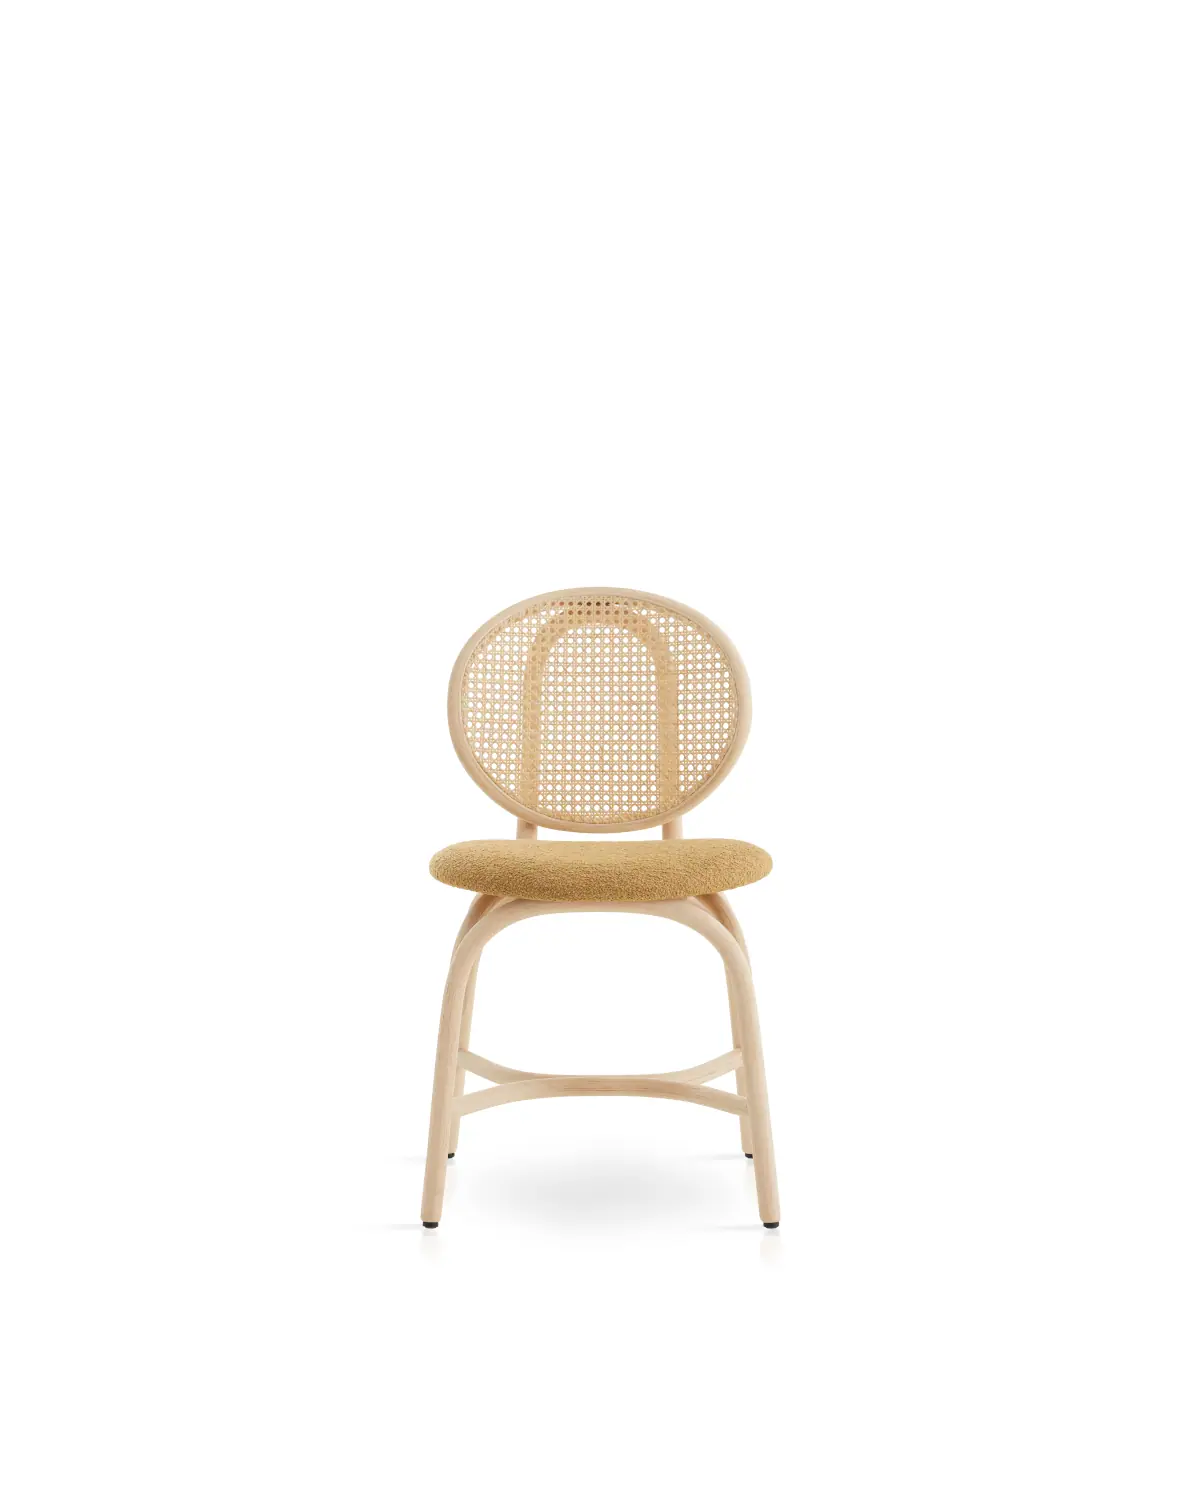 84086-84080-loop-chair